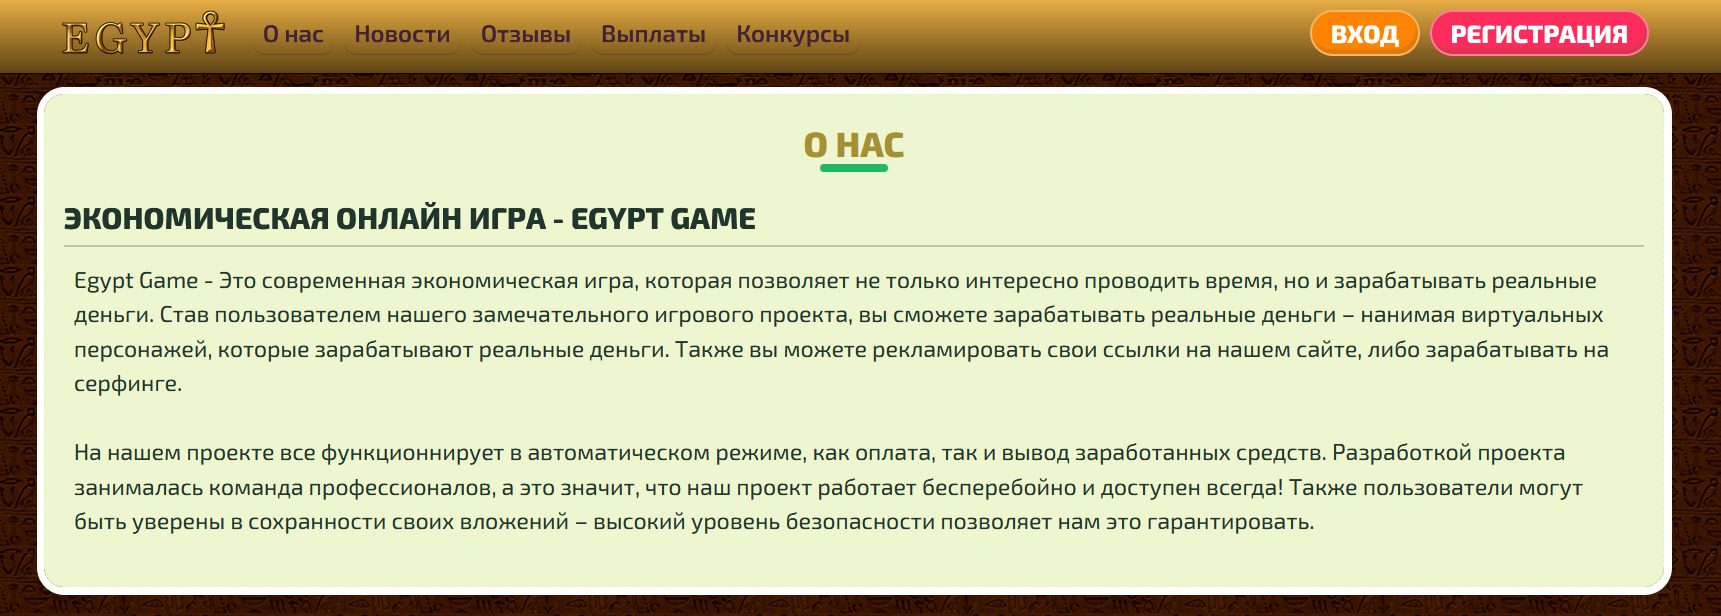 Описание работы компании Egypt game site